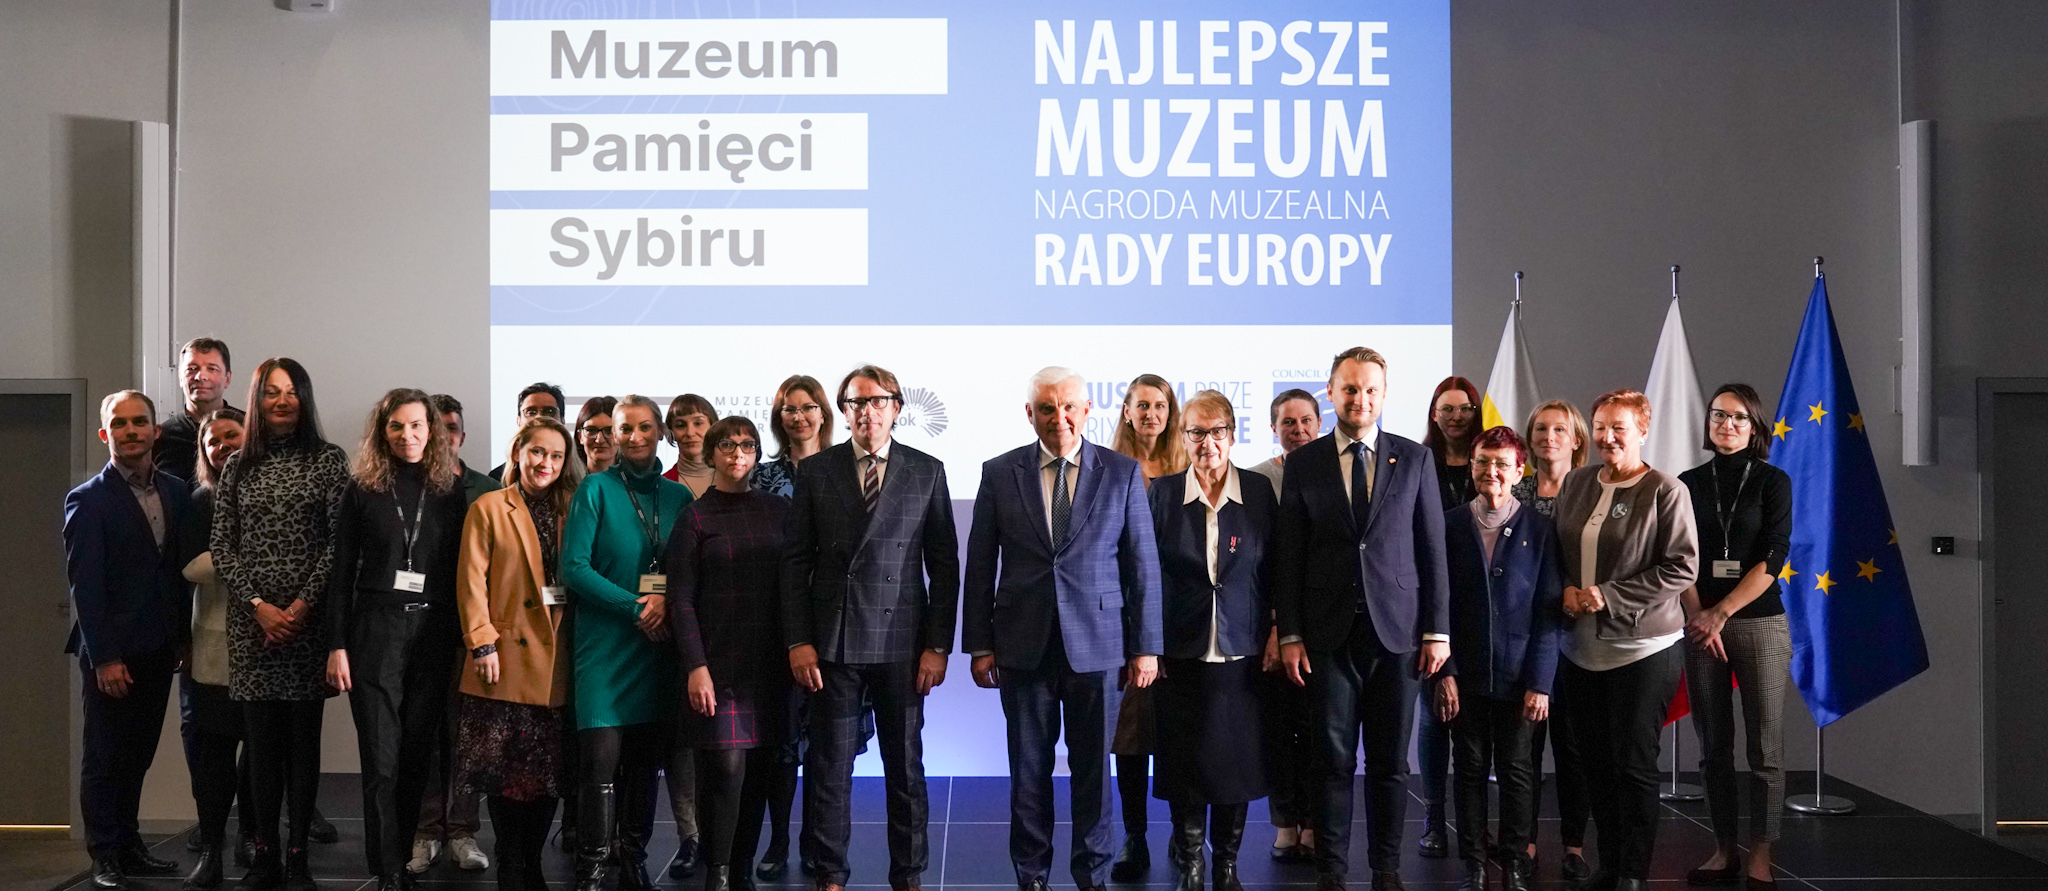 Uczestnicy konferencji prasowej, w tle napis: Muzeum Pamięci Sybiru, Najlepsze Muzeum, Nagroda Muzealna Rady Europy